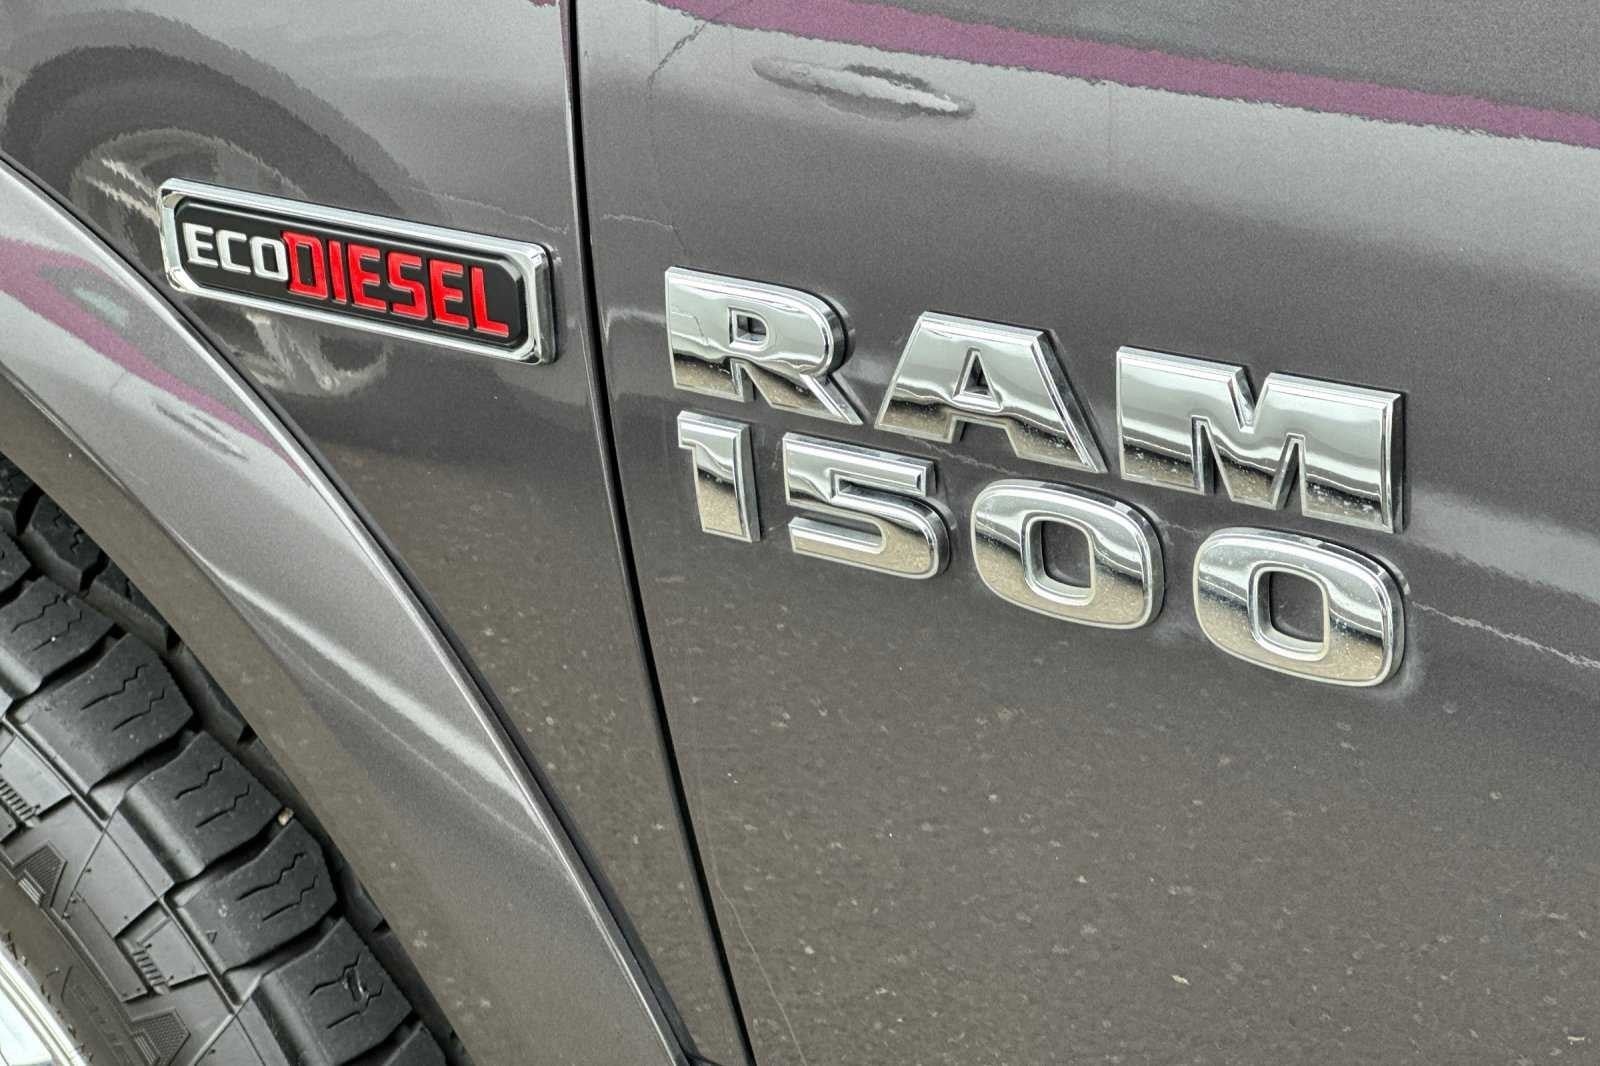 2018 RAM 1500 Laramie